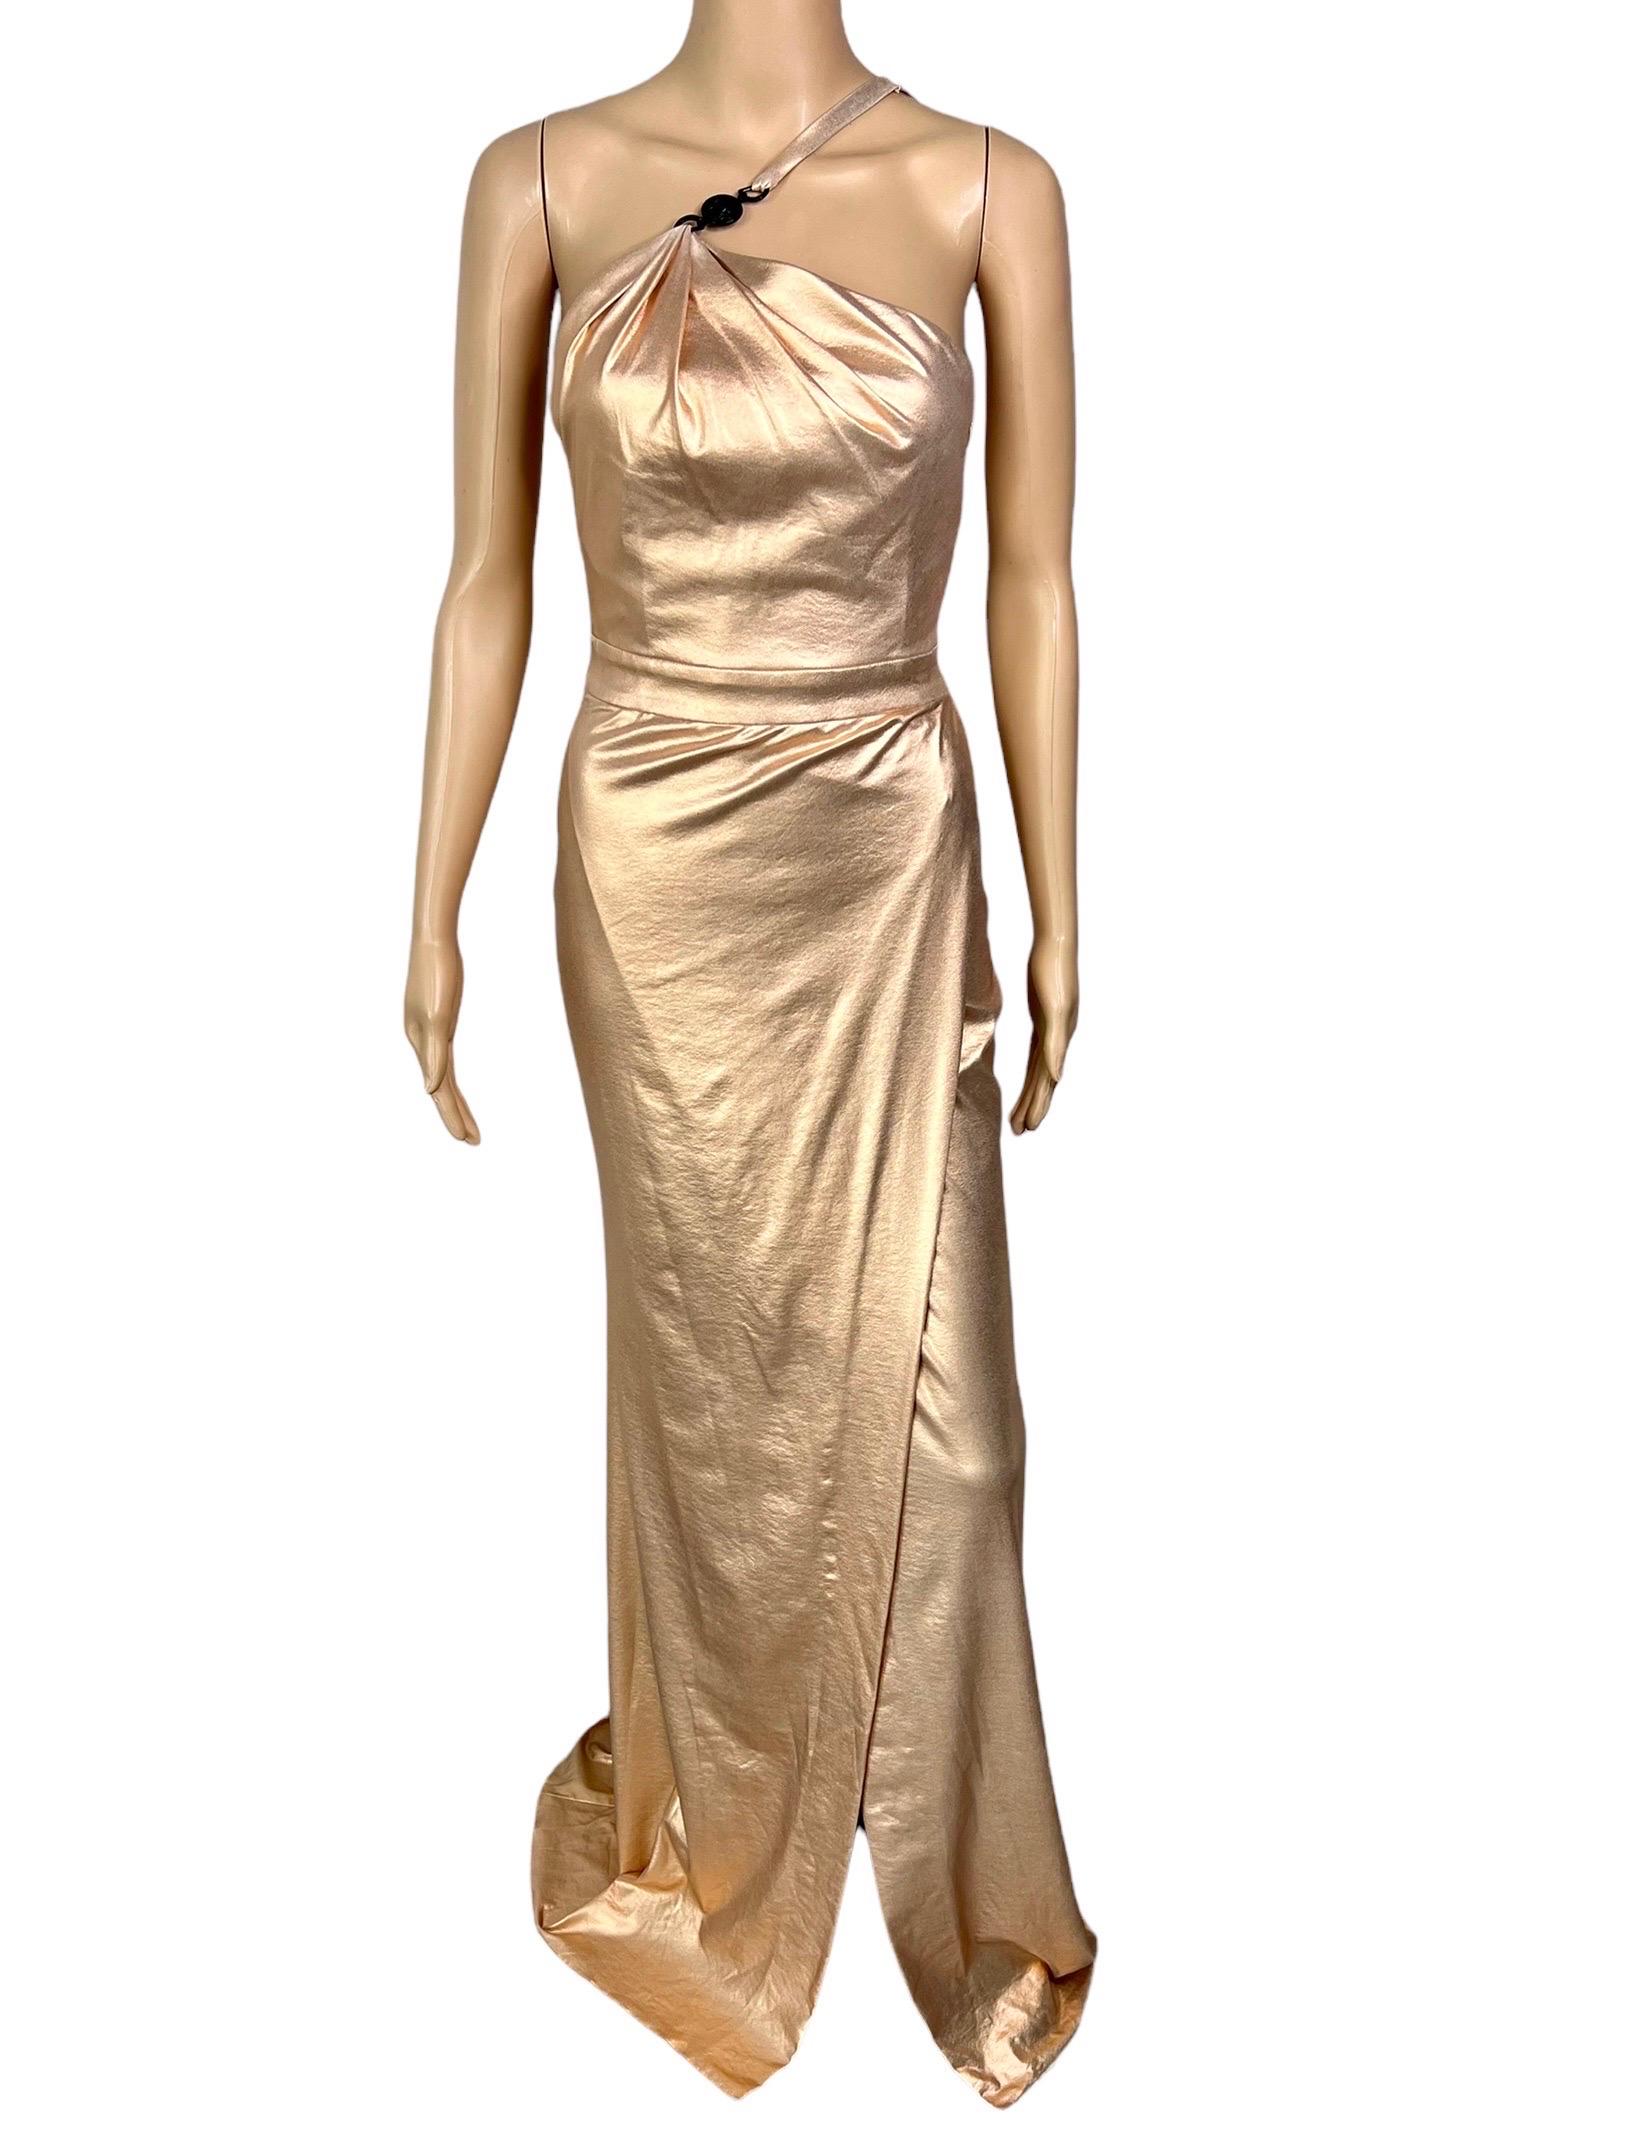  Versace c.2013 Wet Liquid Look Bodycon Metallic Rose Gold Evening Dress Gown IT 38
